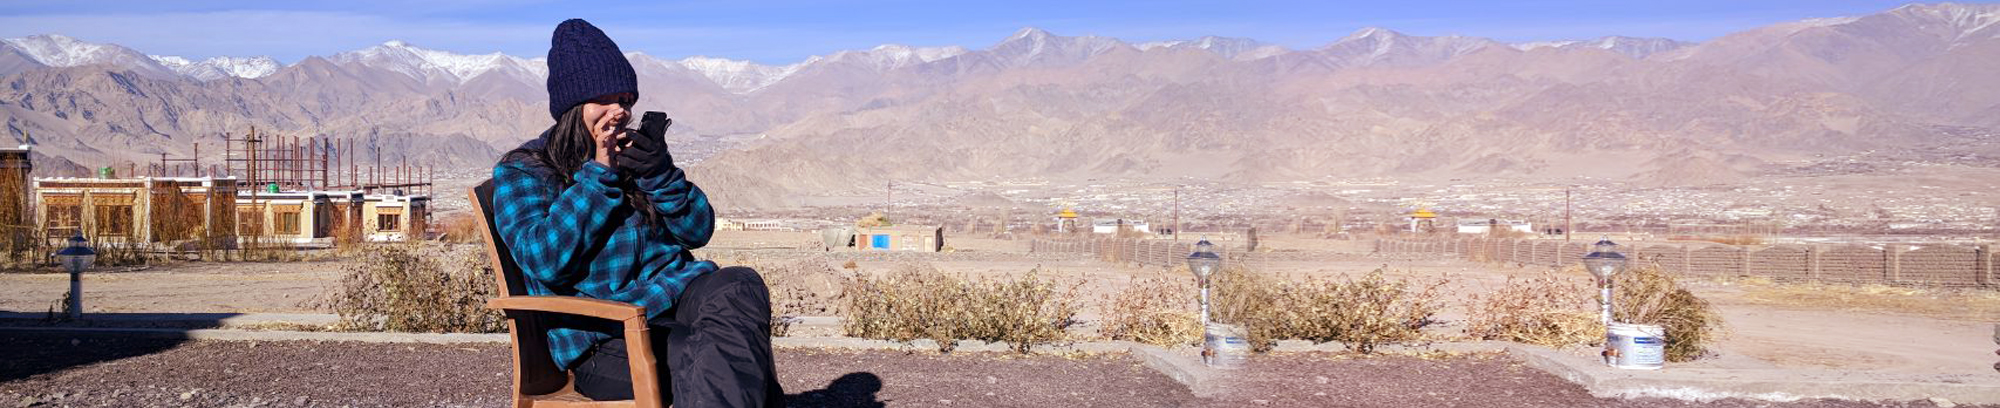 HashTag Ladakh